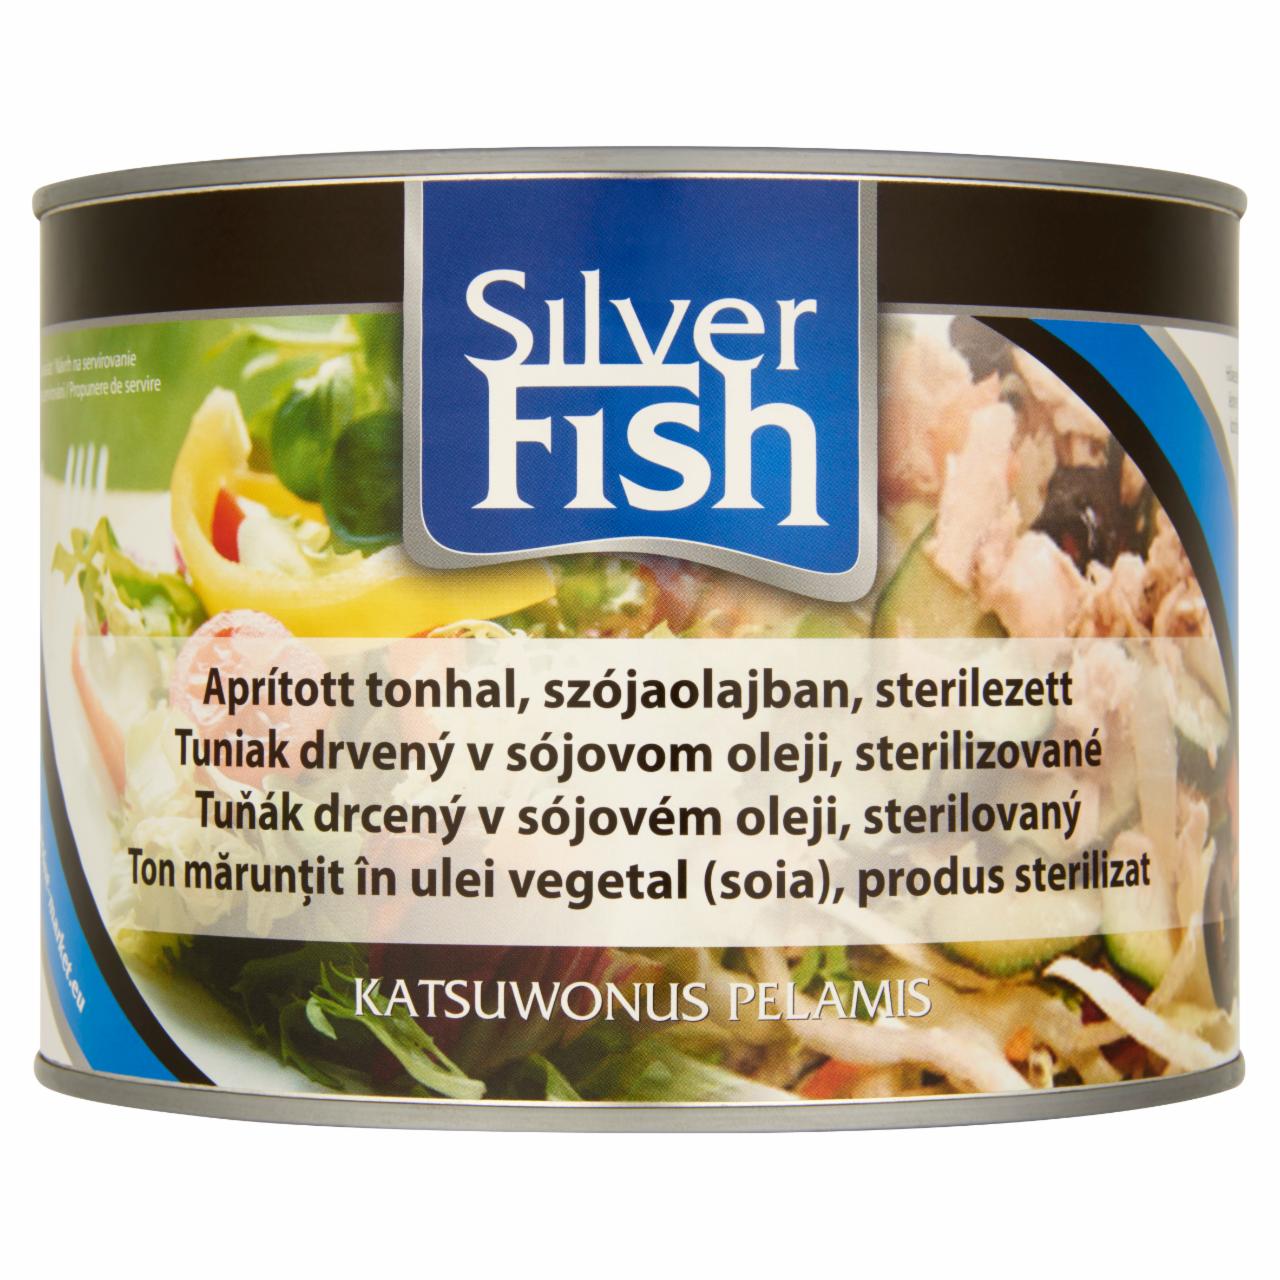 Képek - Silver Fish sterilezett, aprított tonhal szójaolajban 1705 g